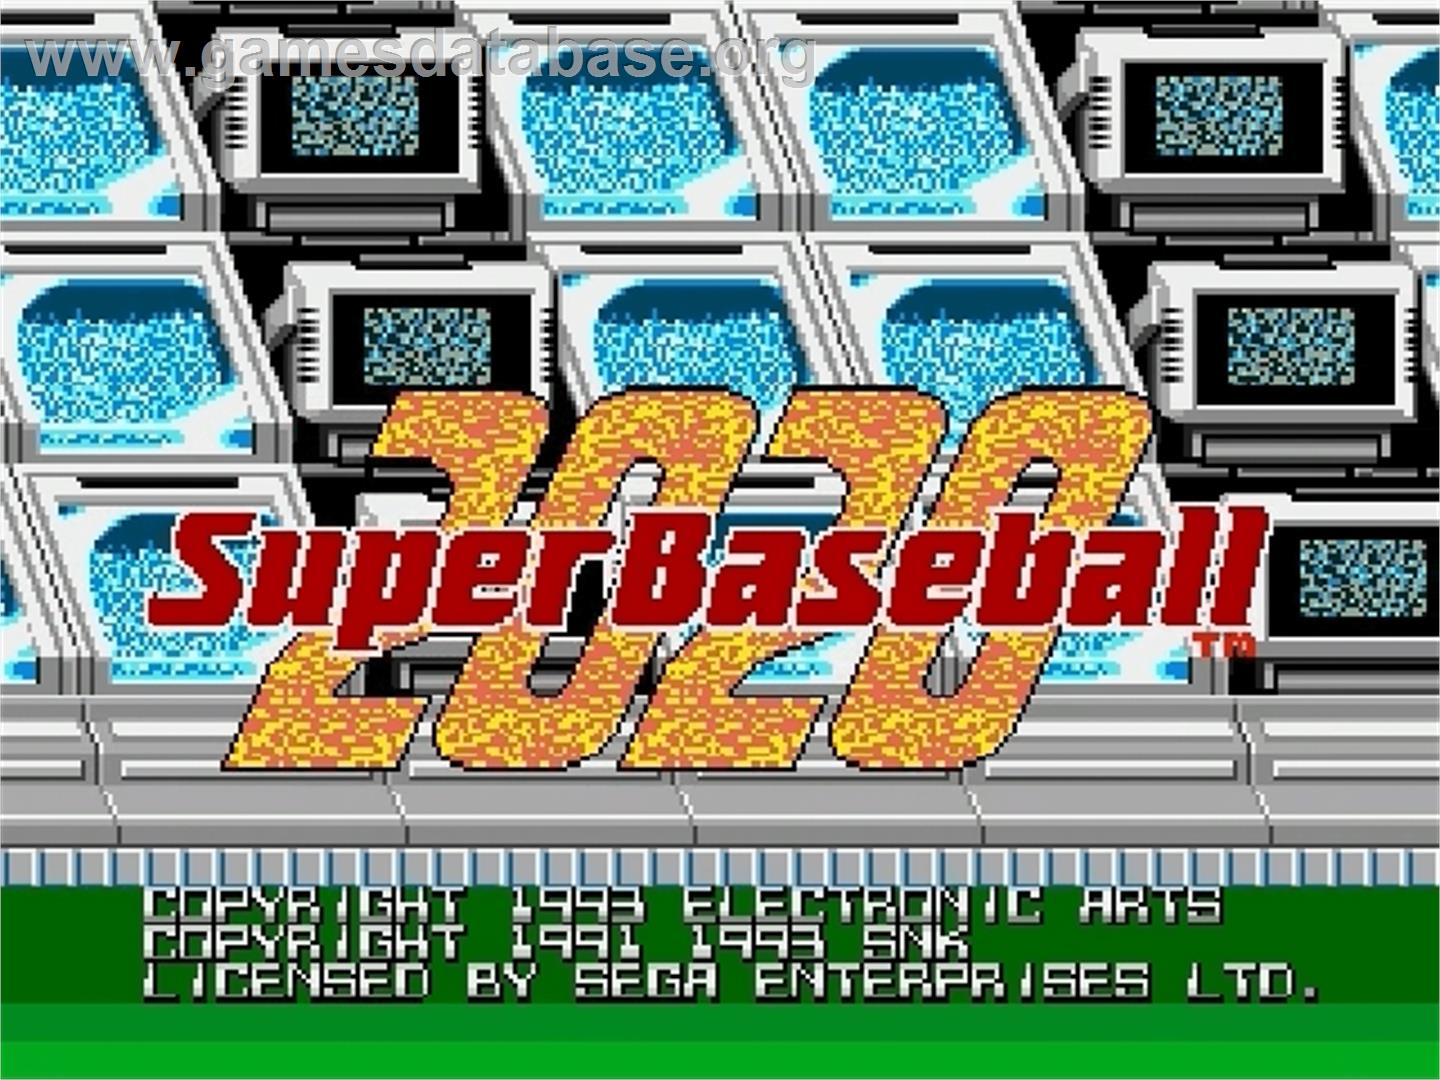 Super Baseball 2020 - Sega Genesis - Artwork - Title Screen